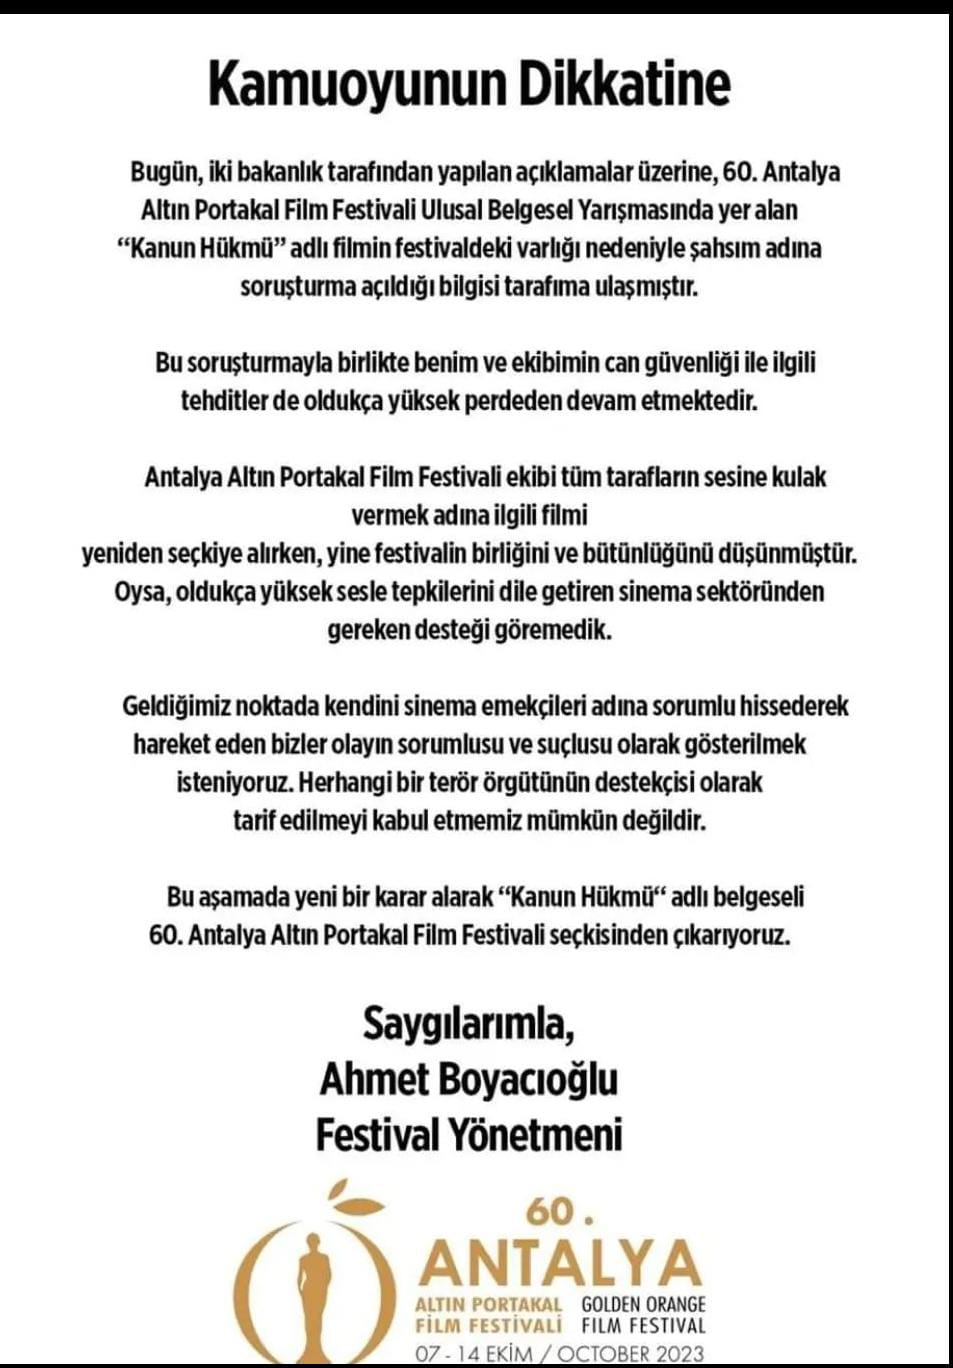 Kanun Hükmü' yine festivalden çıkarıldı - Gündem - Antalya Haberleri